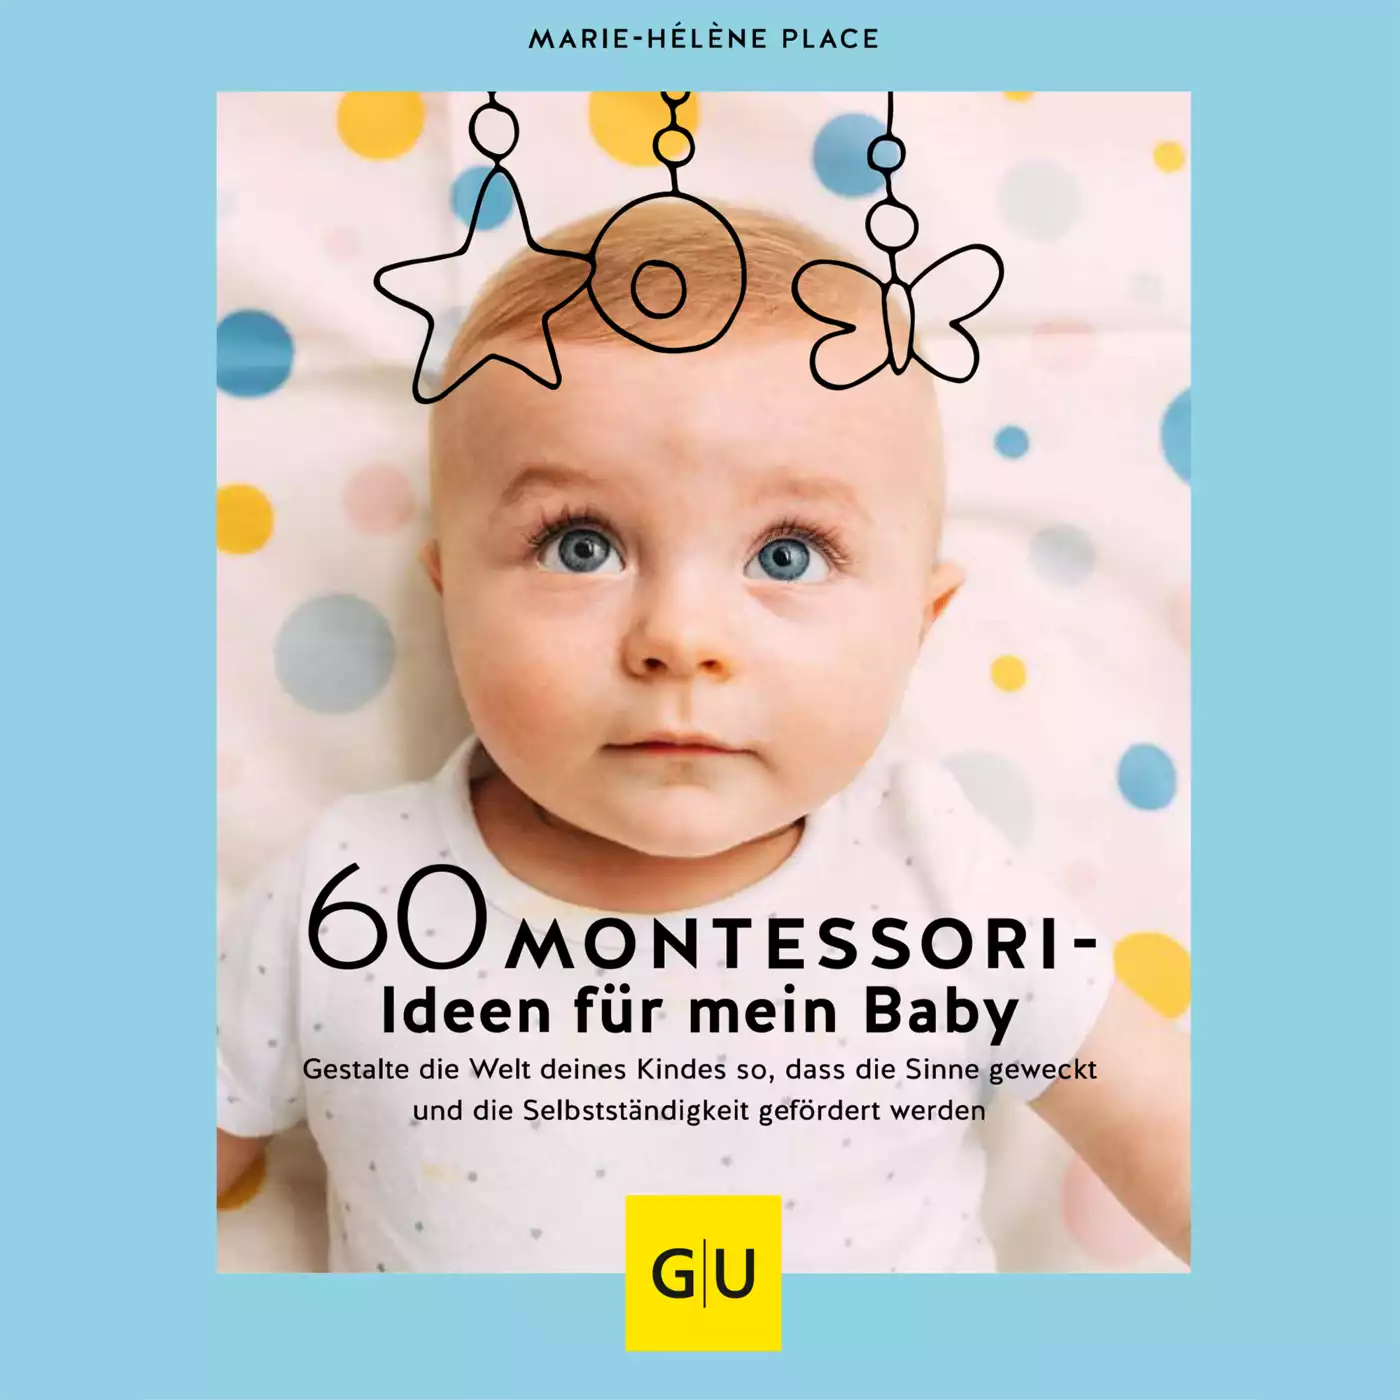 60 Montessori-Ideen für mein Baby GU 2000582197608 3